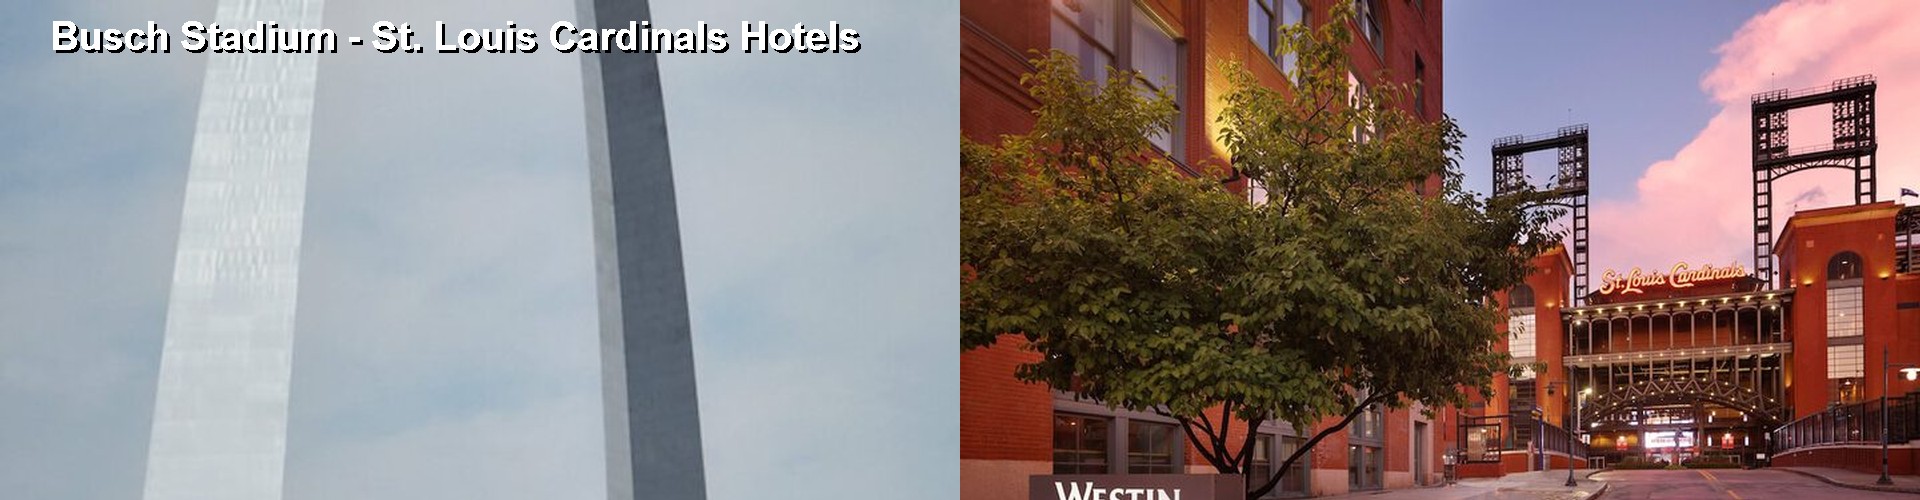 5 Best Hotels near Busch Stadium - St. Louis Cardinals